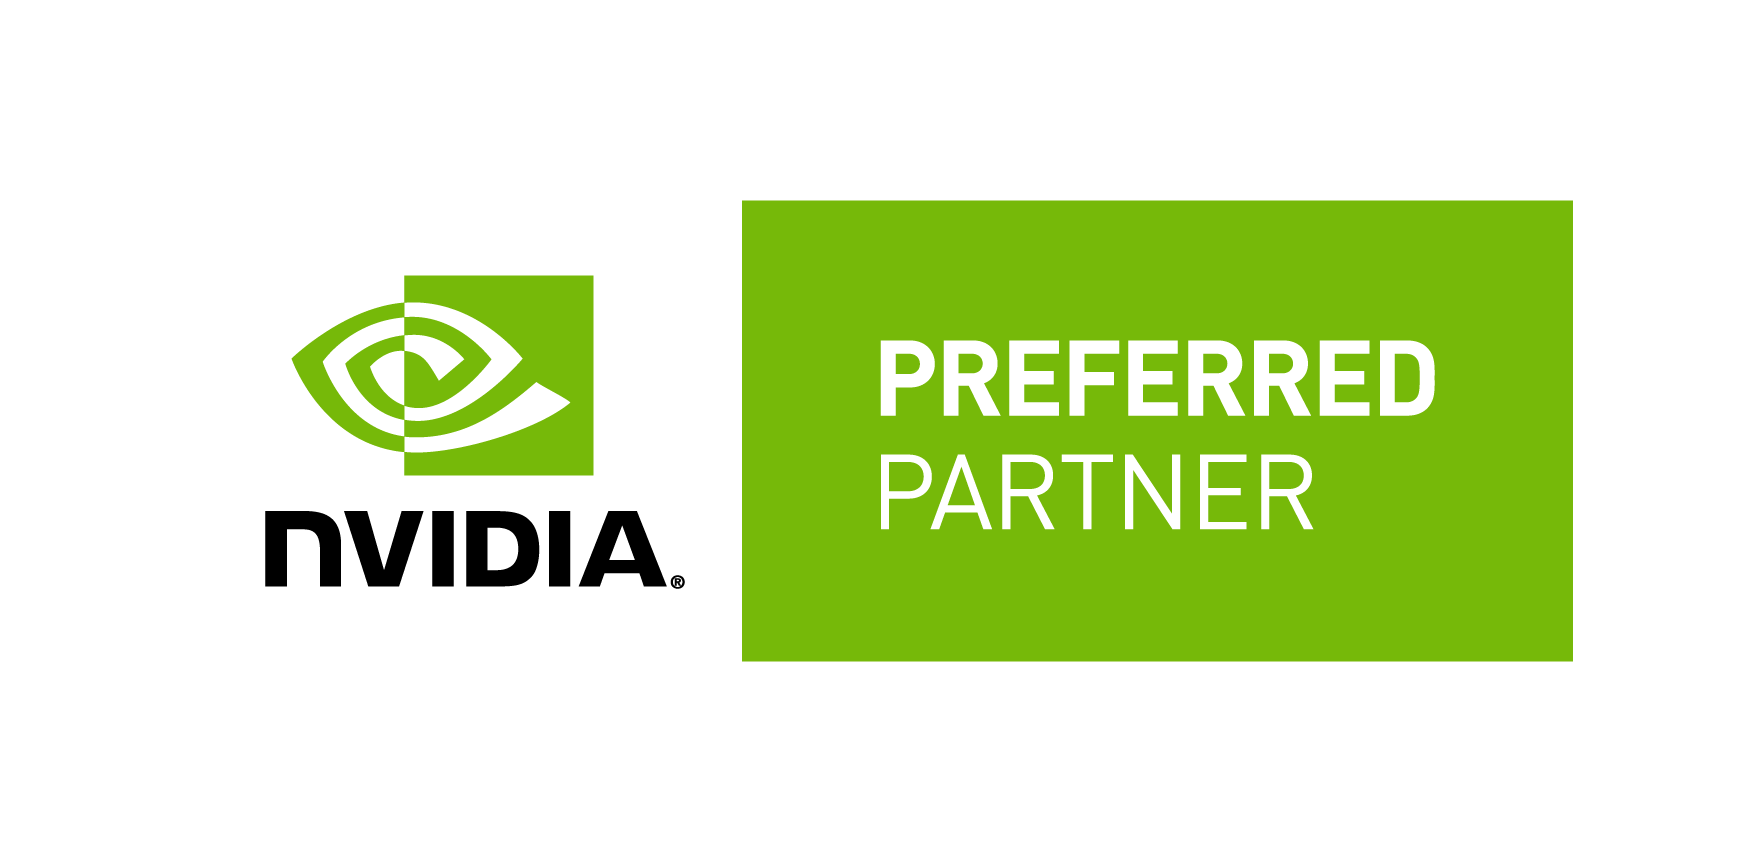 NVIDIA prefferred partner